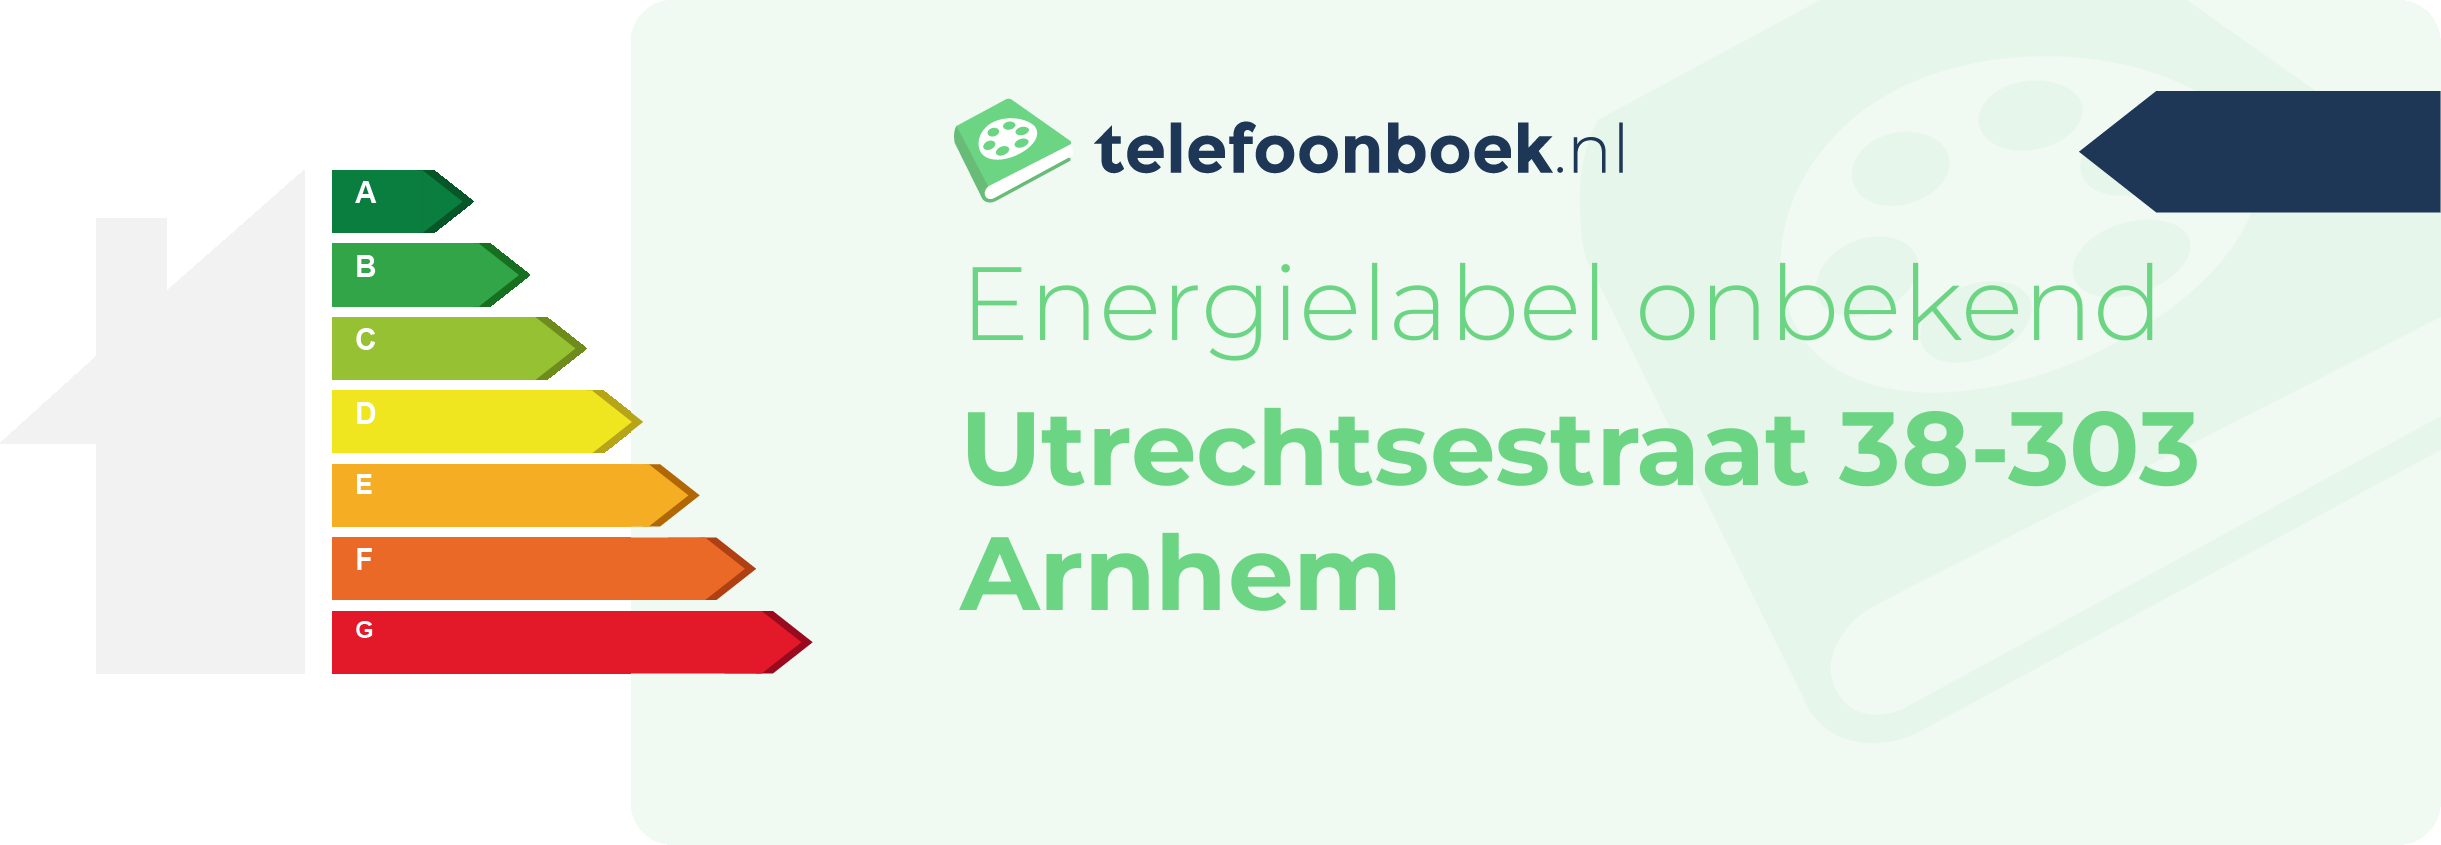 Energielabel Utrechtsestraat 38-303 Arnhem